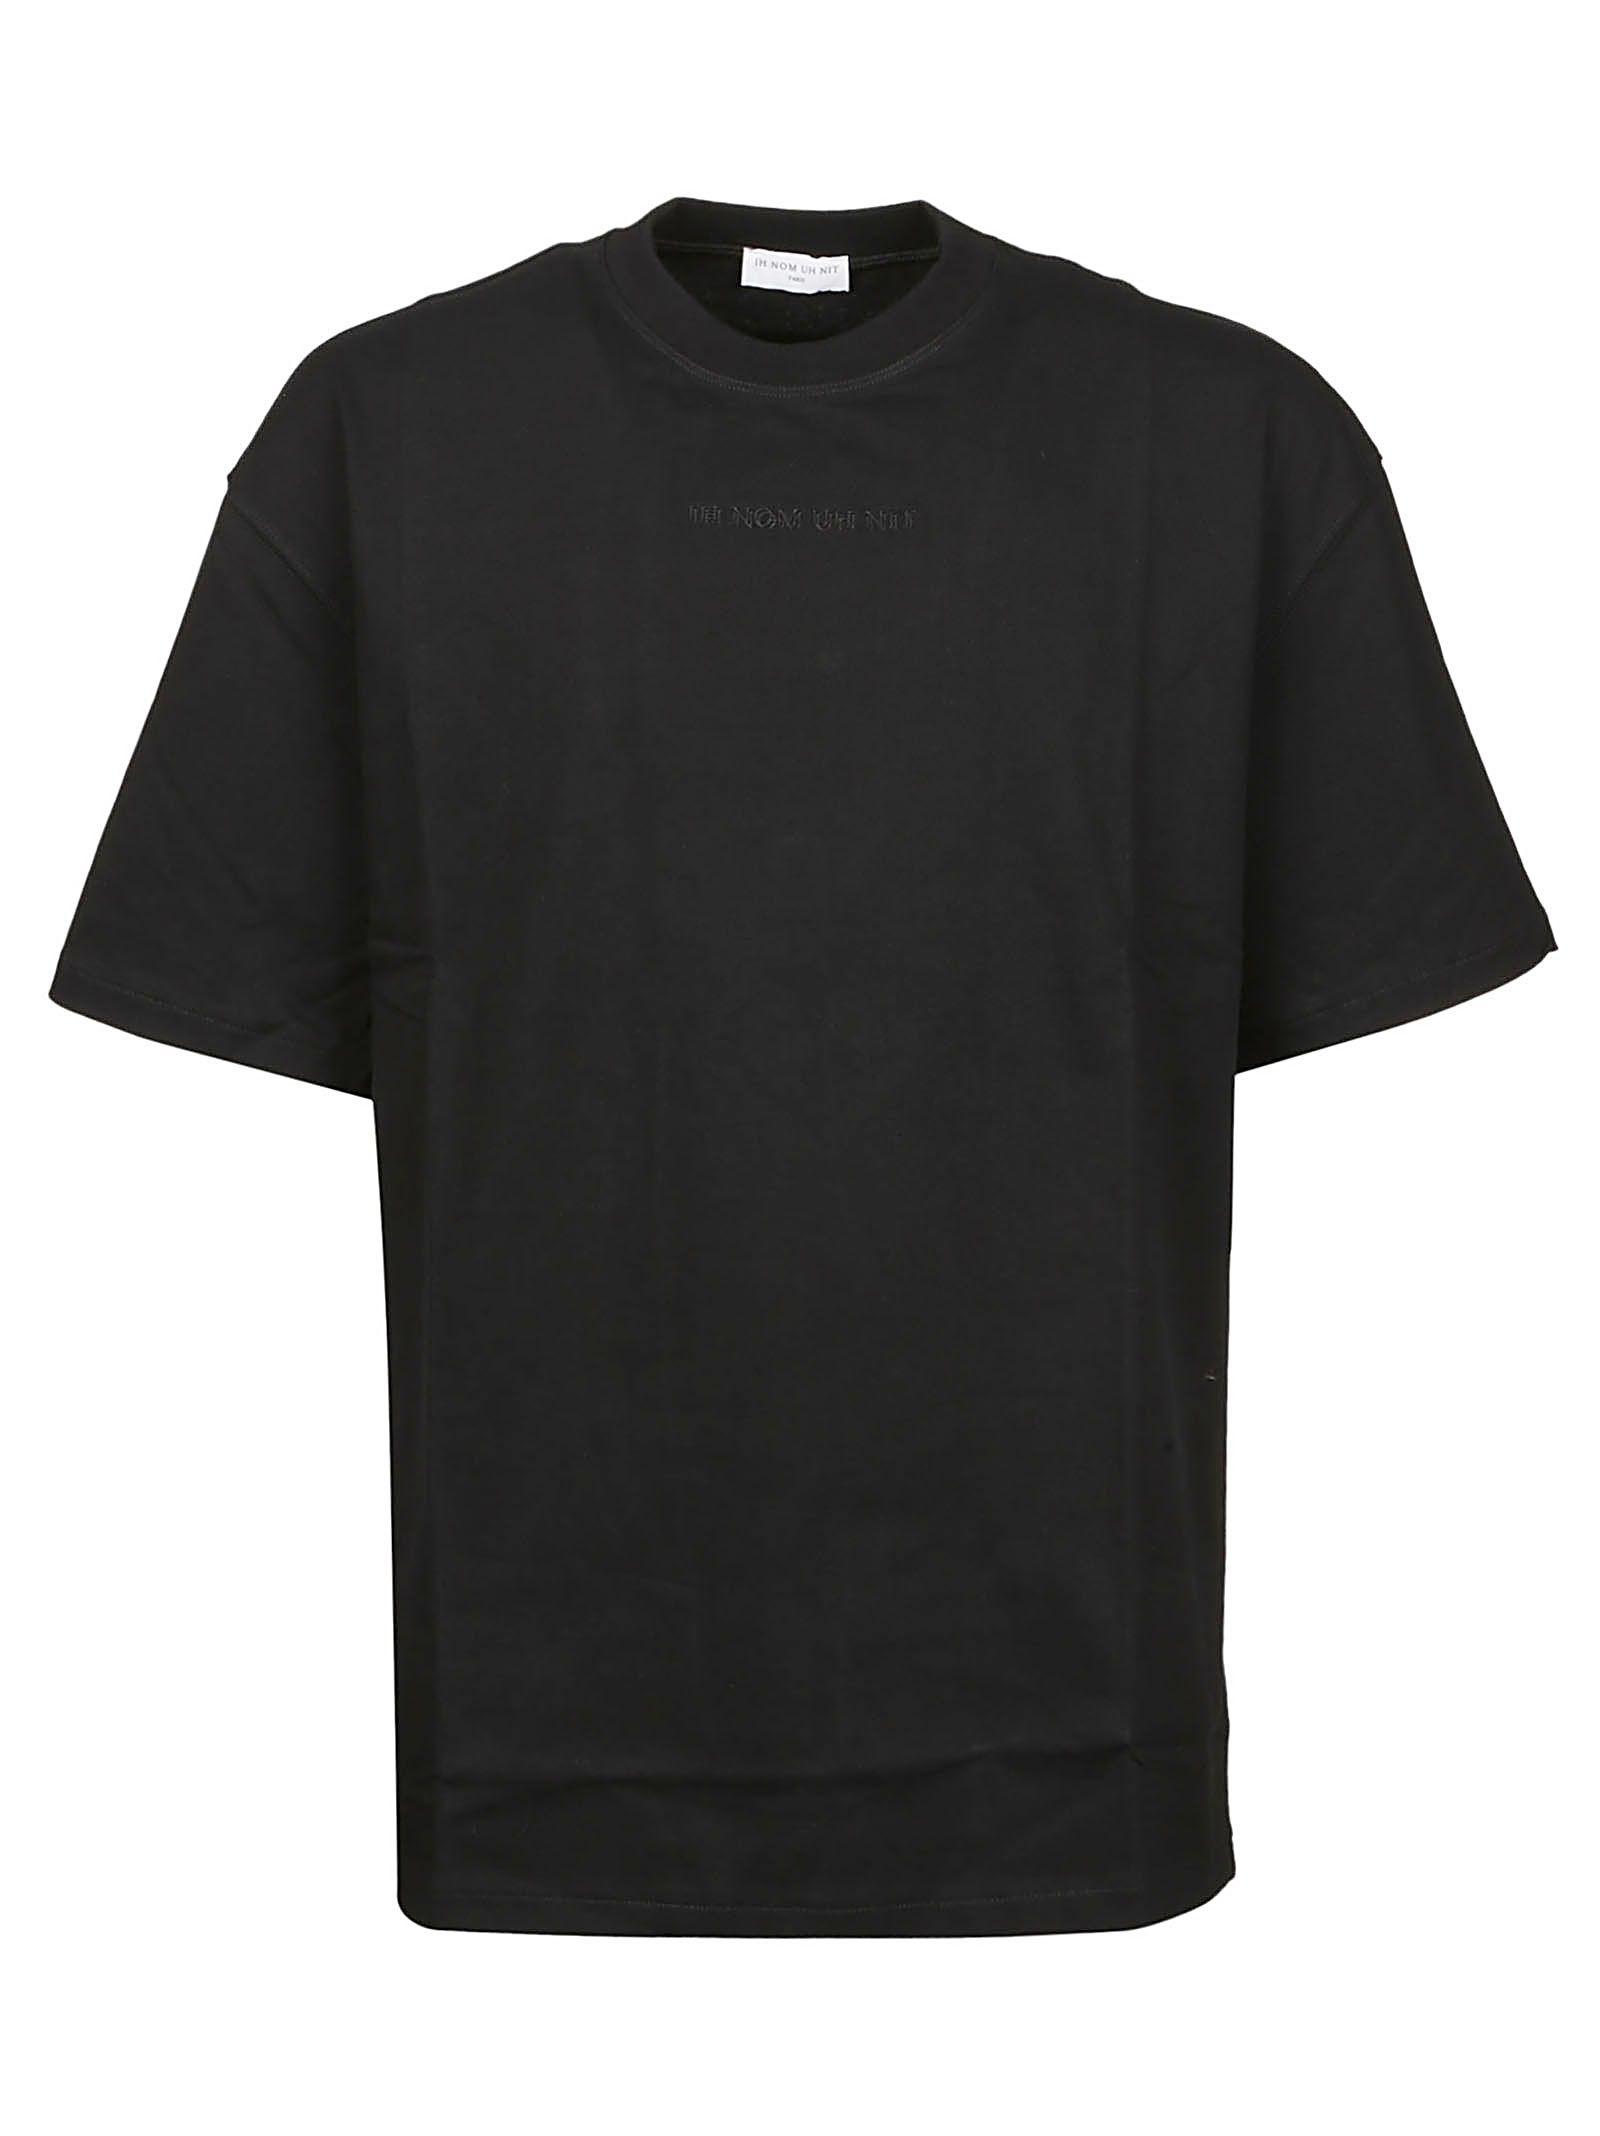 ih nom uh nit Black Cotton T-shirt for Men - Lyst